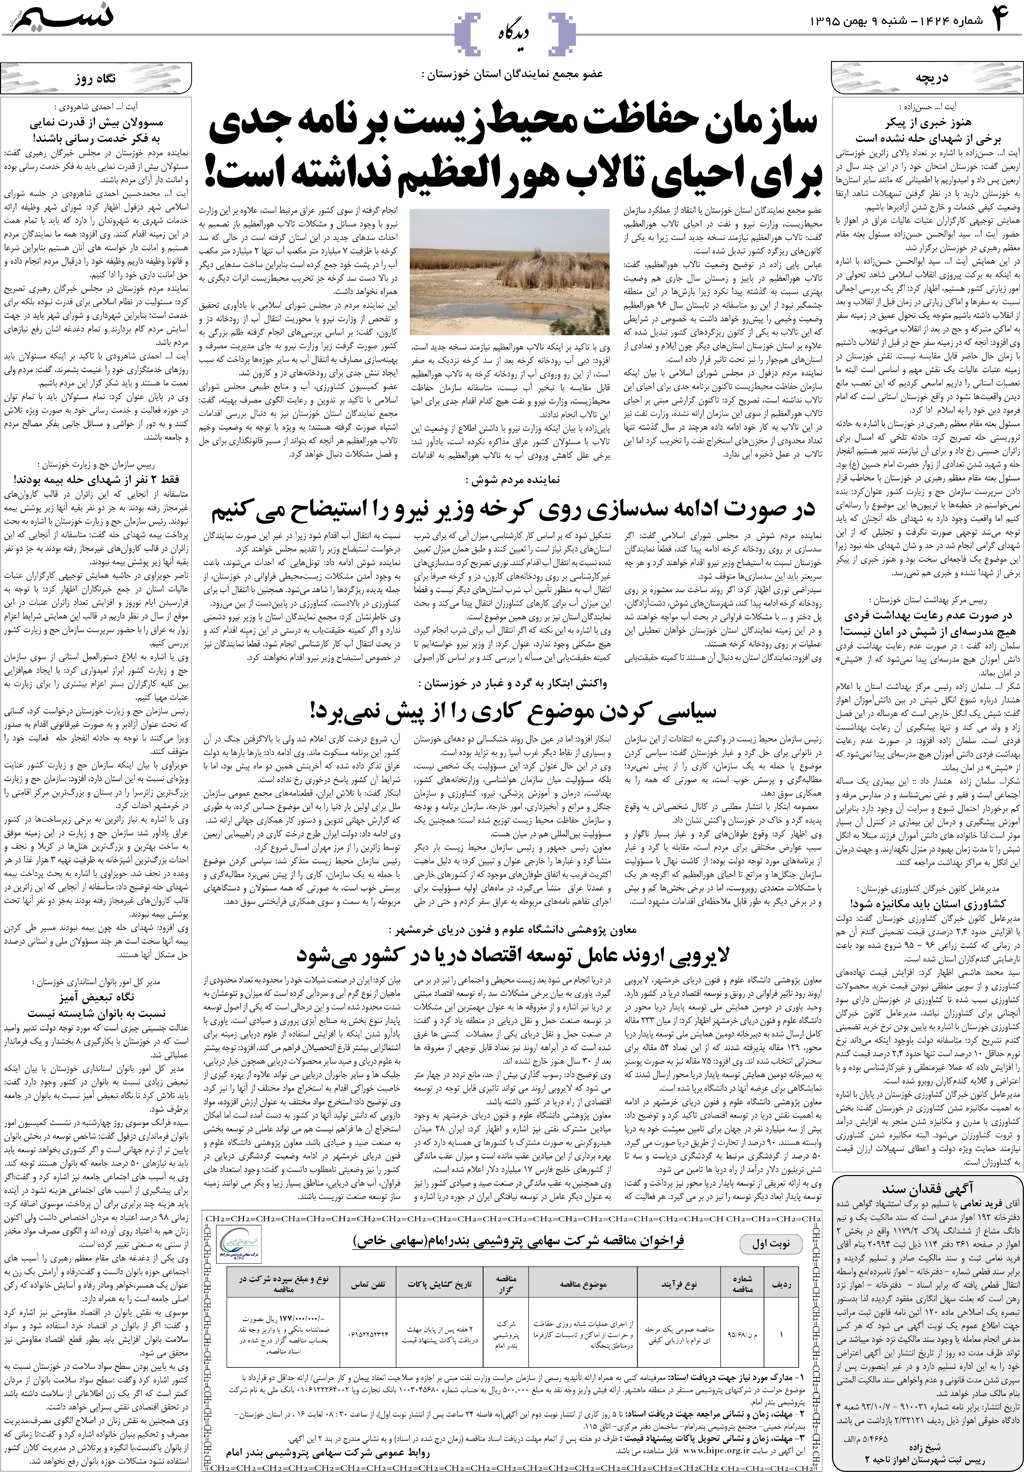 صفحه دیدگاه روزنامه نسیم شماره 1424